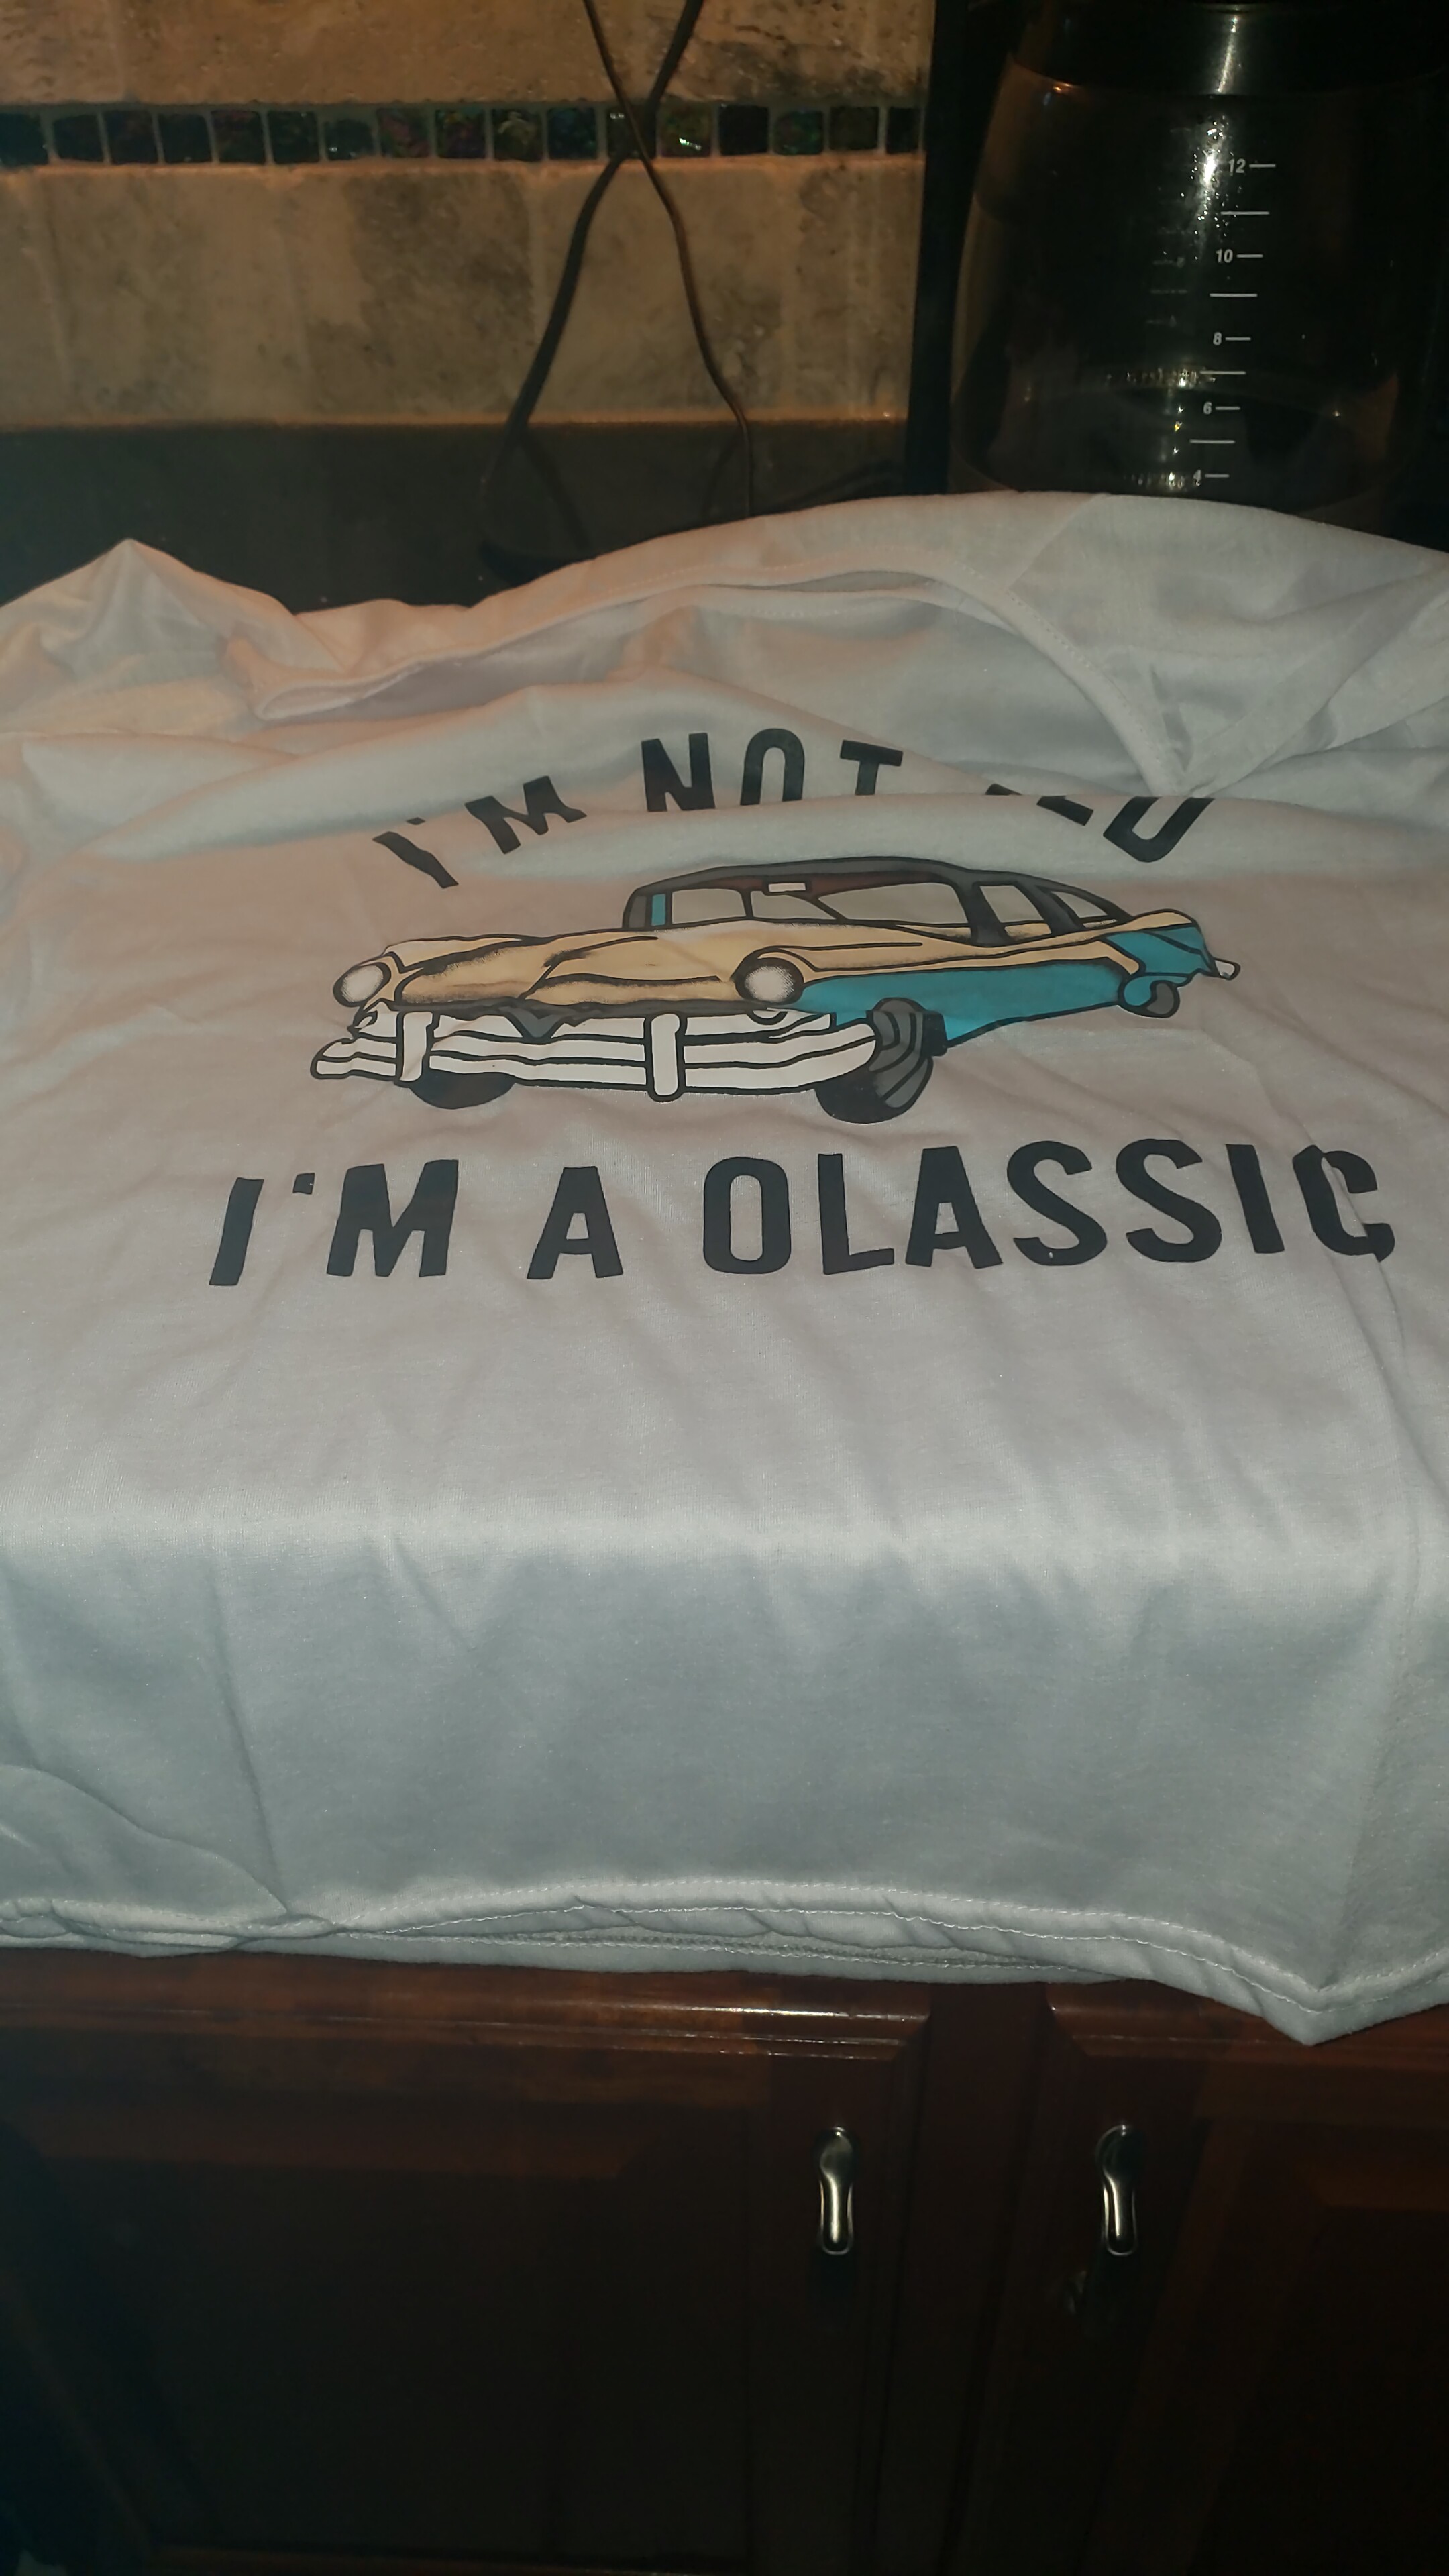 the shirt I received  "I'm A Olassic"